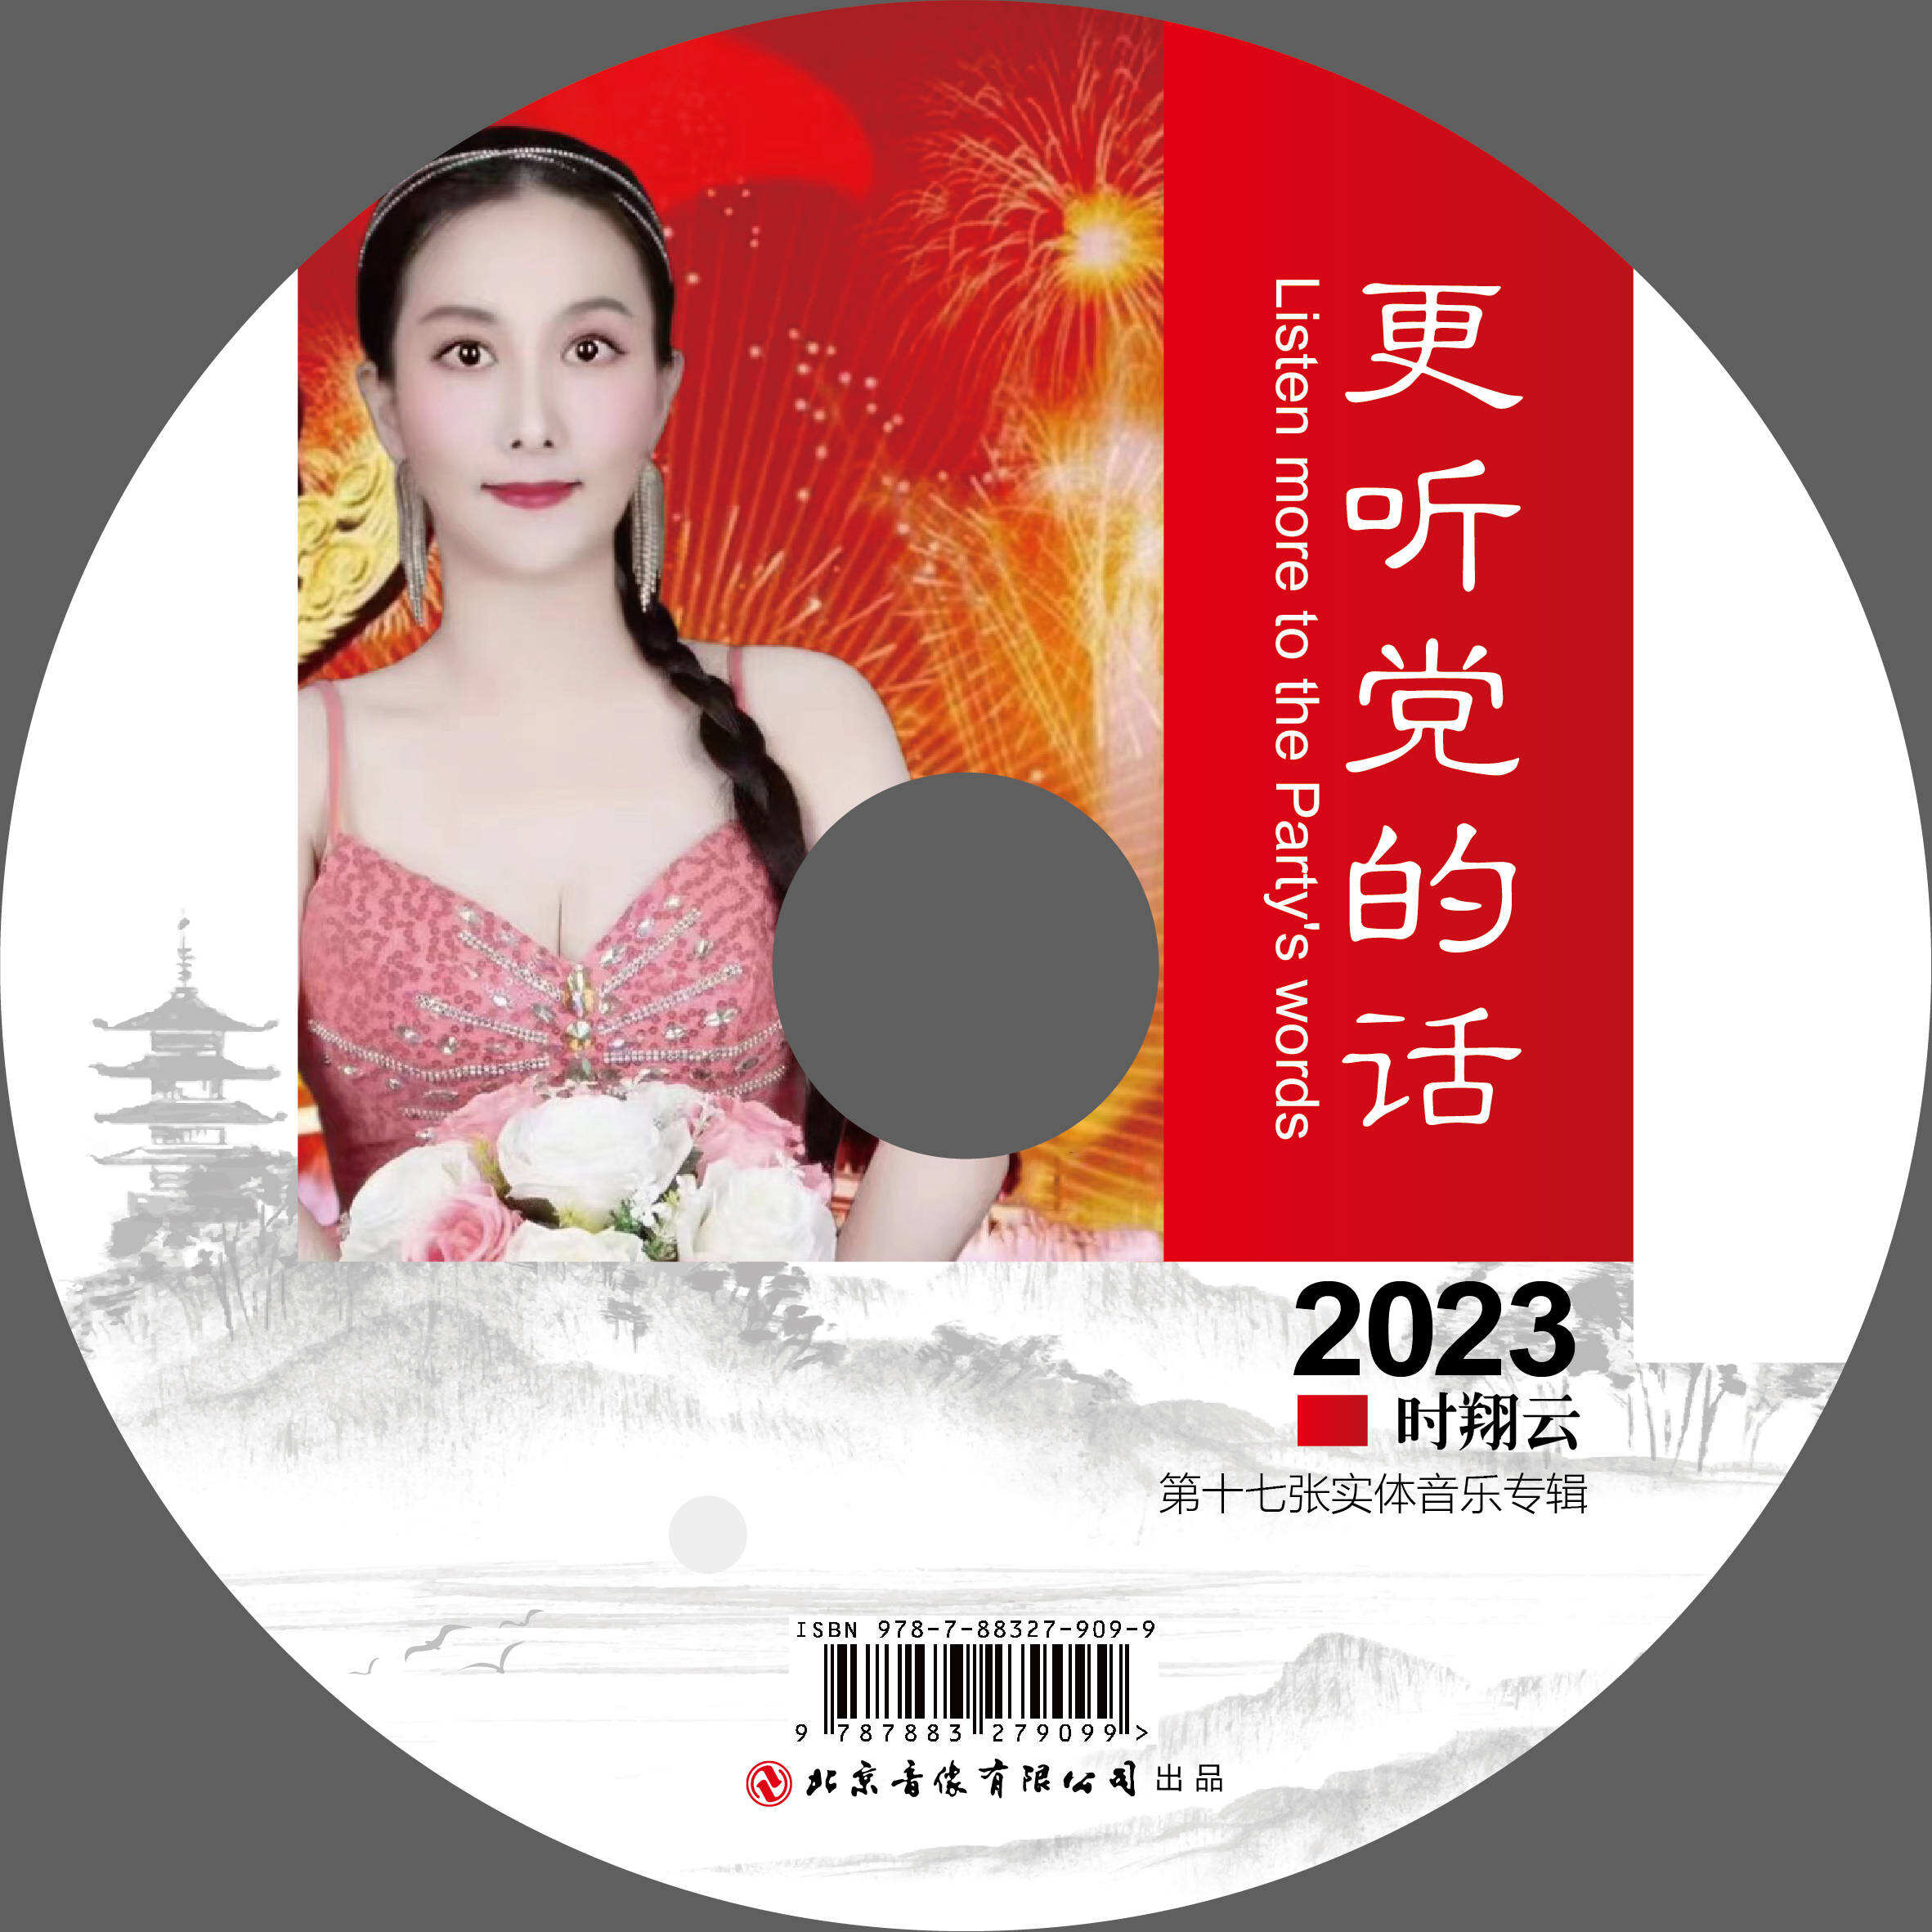 2023时翔云第十七张实体音乐专辑《更听党的话》出品